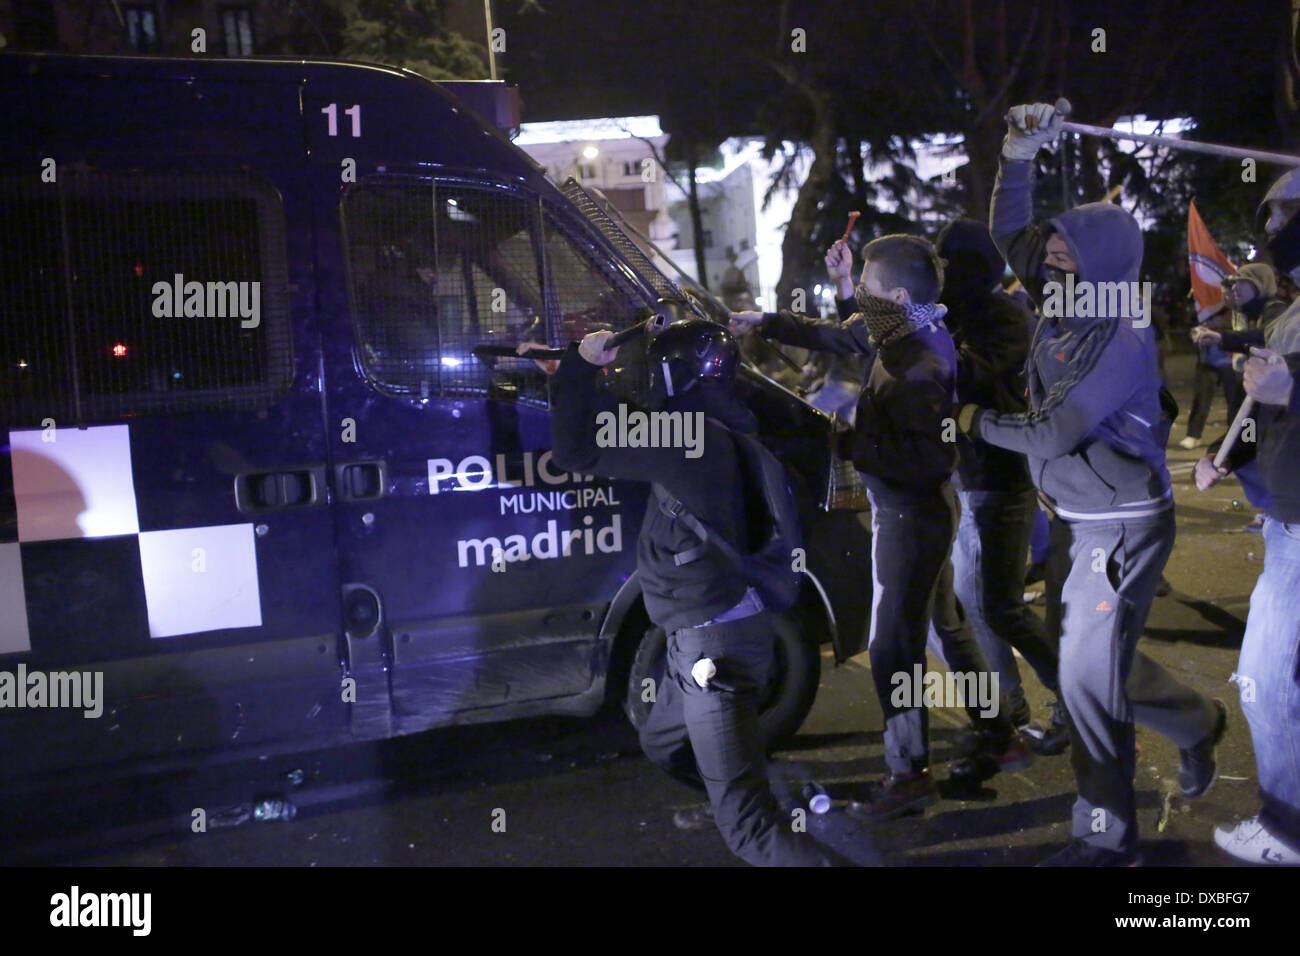 Madrid, Spanien. 22. März 2014. Demonstranten Zusammenstoß mit der Polizei während einer Protestaktion namens '' marschieren würde '' gegen die Regierung in Madrid, Spanien, Samstag, 22. März 2014. Die spanische Polizei und Demonstranten stießen während einer Demonstration gegen Sparpolitik, die Zehntausende von Menschen ins Zentrum von Madrid am Samstag zog am Ende. Die Polizei sagte in einer Erklärung, mehr als 100 Personen verletzten 55 Offiziere waren, die einige von ihnen mit schweren Wunden und 29 Personen wurden verhaftet. Bildnachweis: Rodrigo Garcia/NurPhoto/ZUMAPRESS.com/Alamy Live-Nachrichten Stockfoto